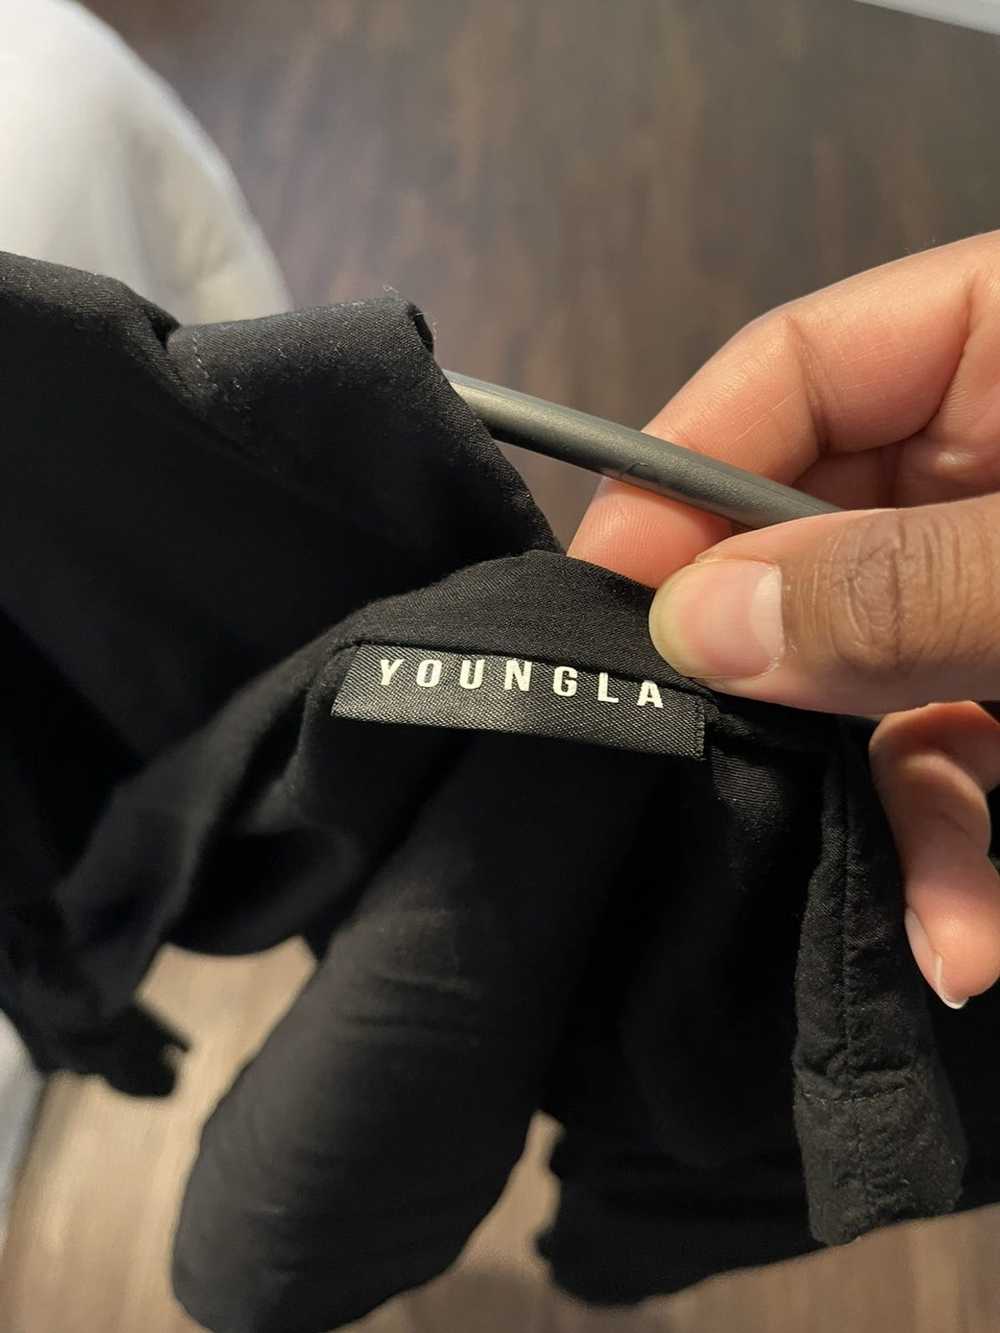 Other YoungLA 804 Scarface Viscose Black Shirt - image 3